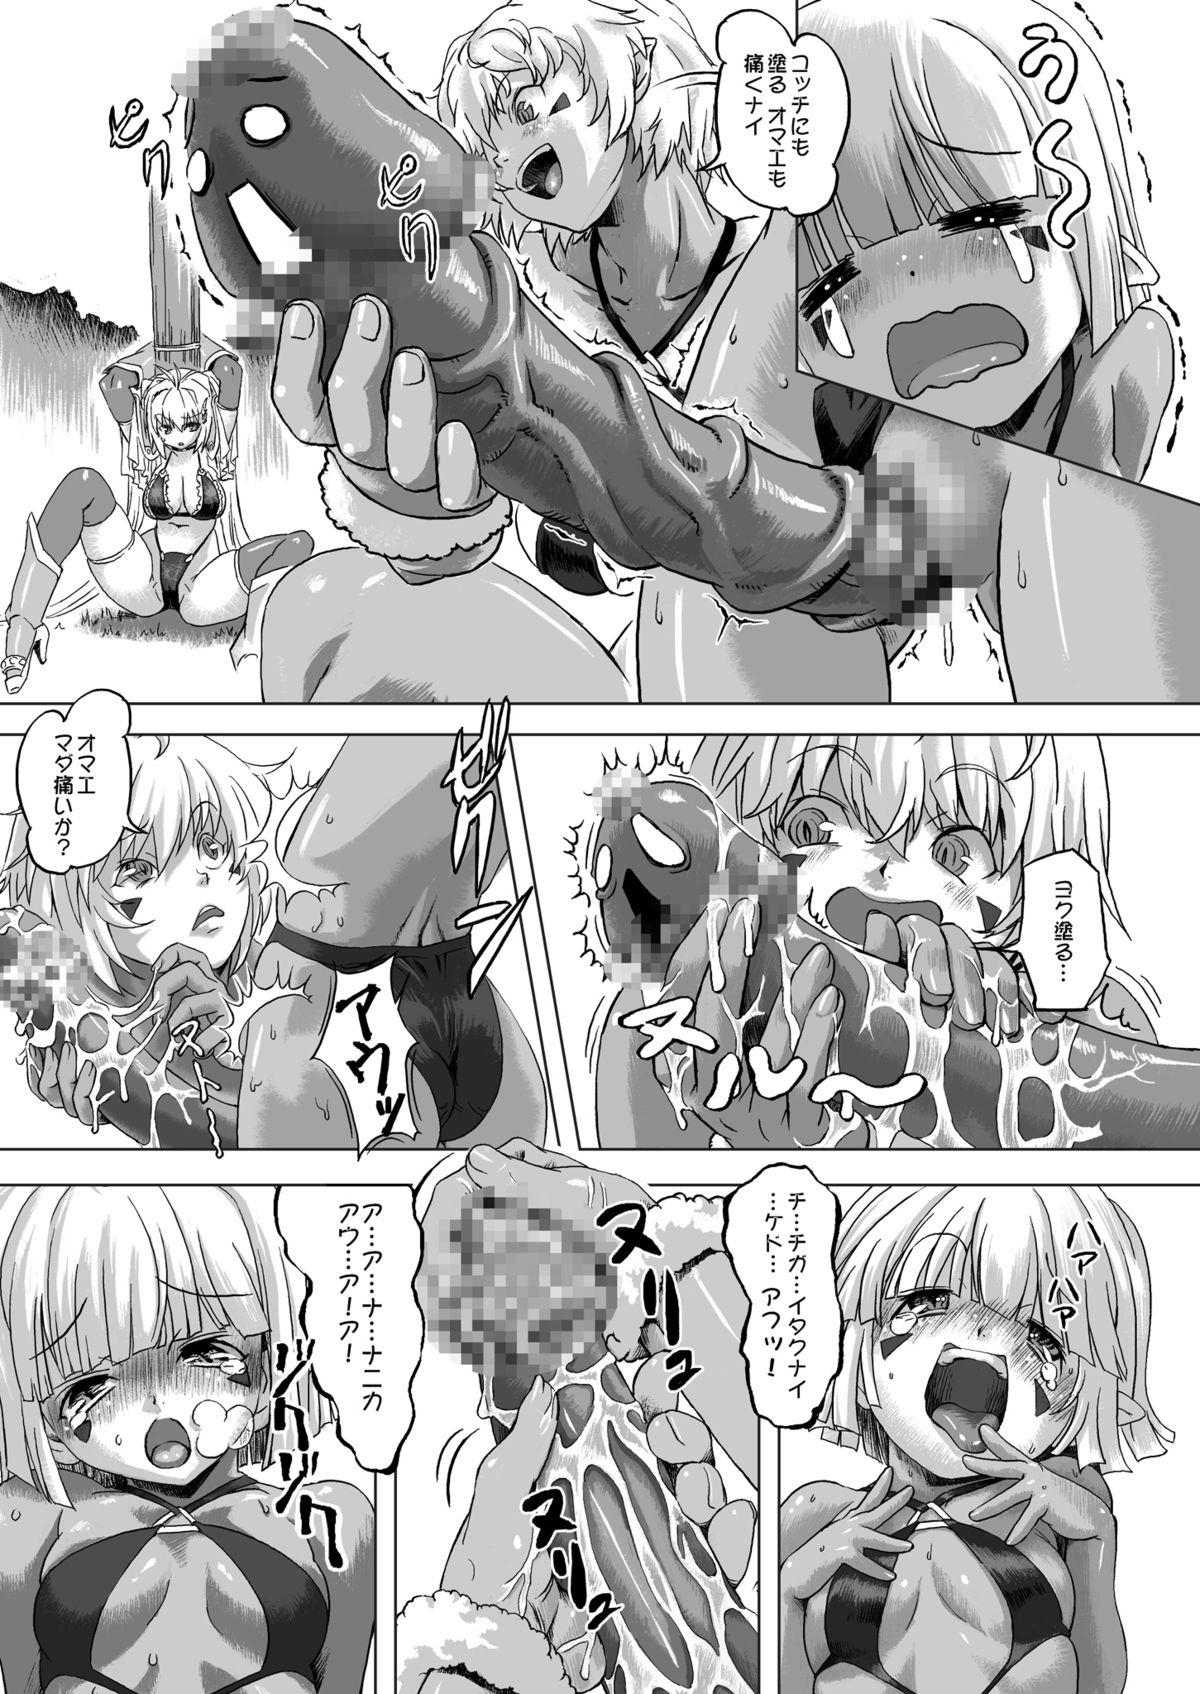 Office Zoku Senshi vs. - Dragon quest iii Blow - Page 7